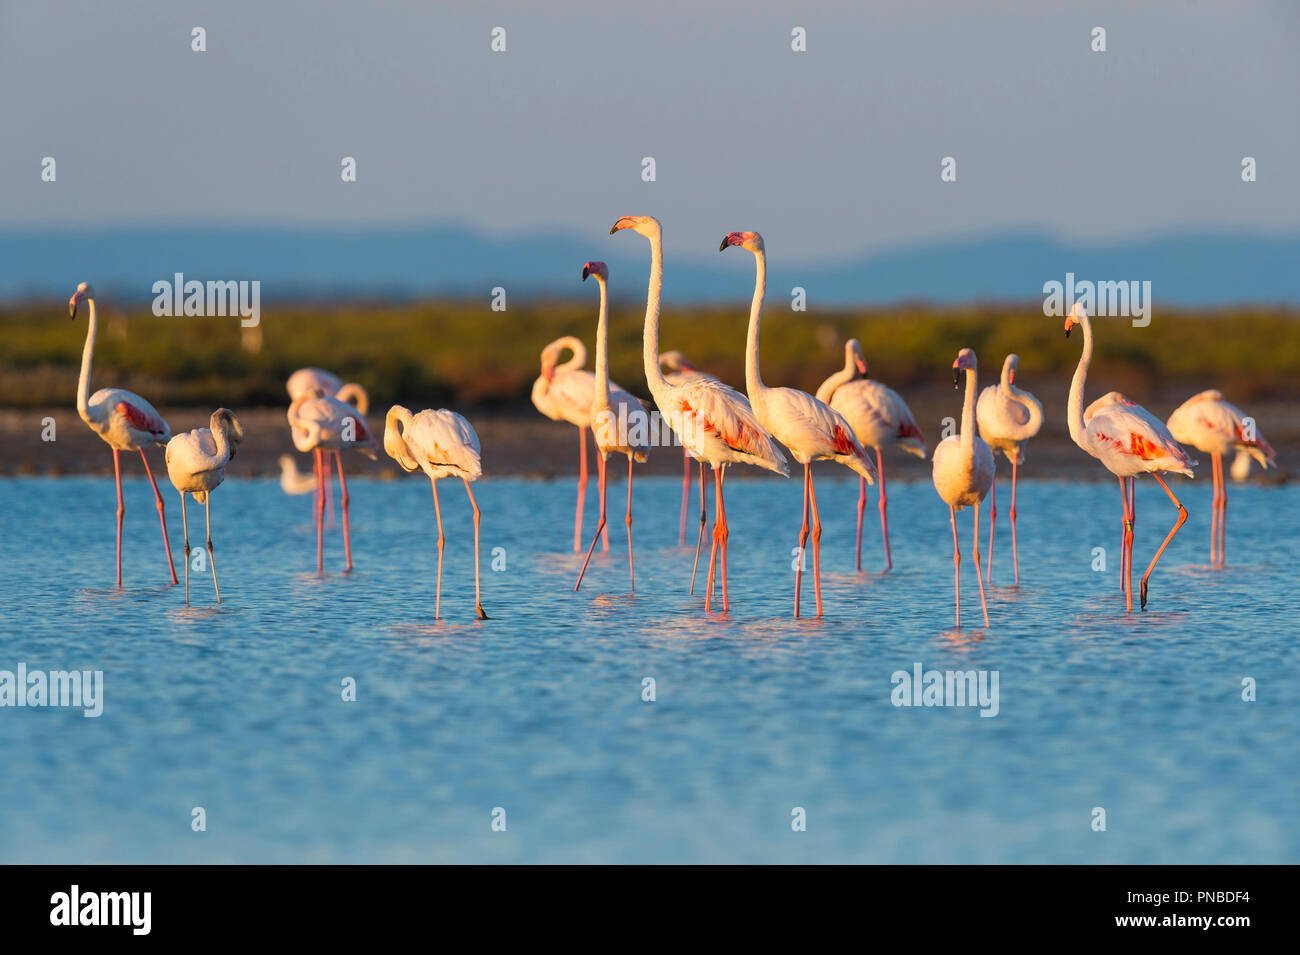 Unione Flamingo, grande fenicottero rosa Phoenicopterus roseus, Saintes-Maries-de-la-Mer, Parc naturel régional de Camargue, Languedoc Roussillon, Francia Foto Stock